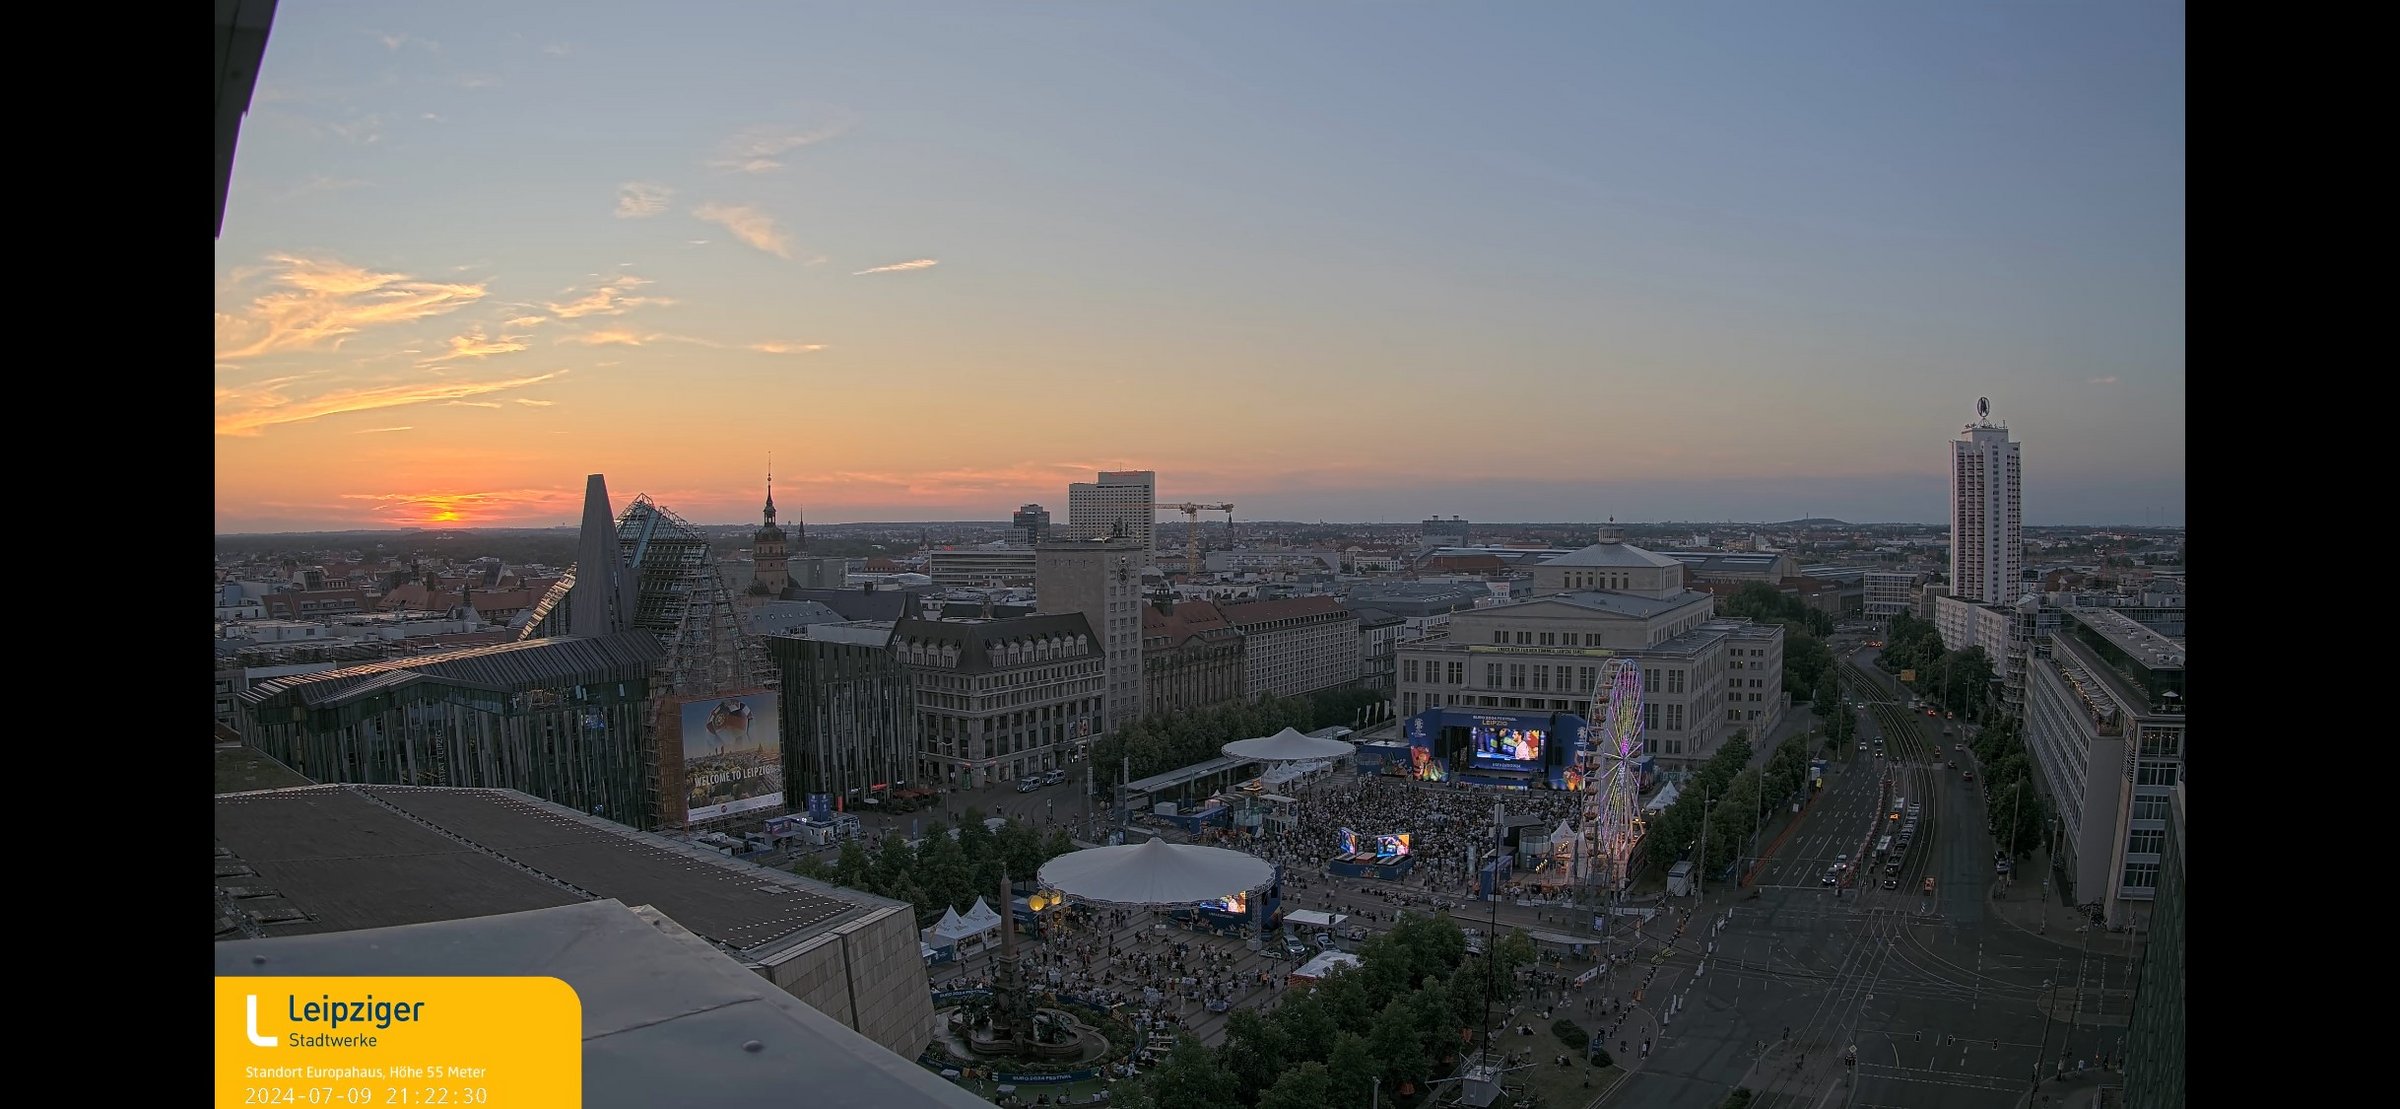 Die Fanzone am Augustusplatz aus der Vogelperspektive: Die Webcam der Leipziger Stadtwerke auf dem Dach des Europahauses hat dieses Bild ermöglicht.